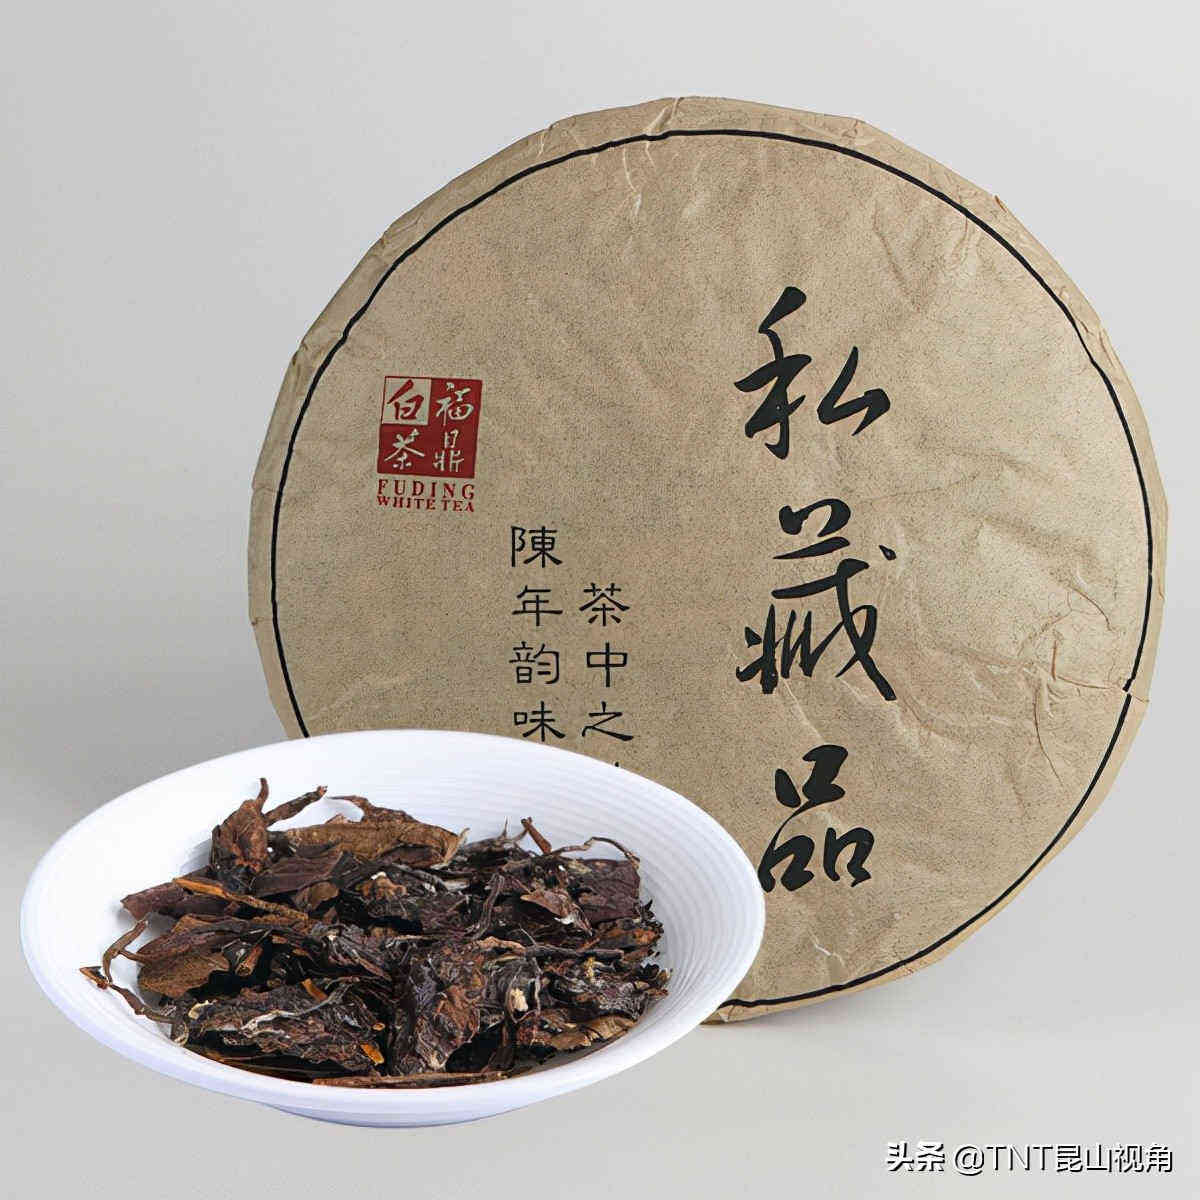 福鼎白茶多少钱一斤 影响福鼎白茶价格的因素有哪些